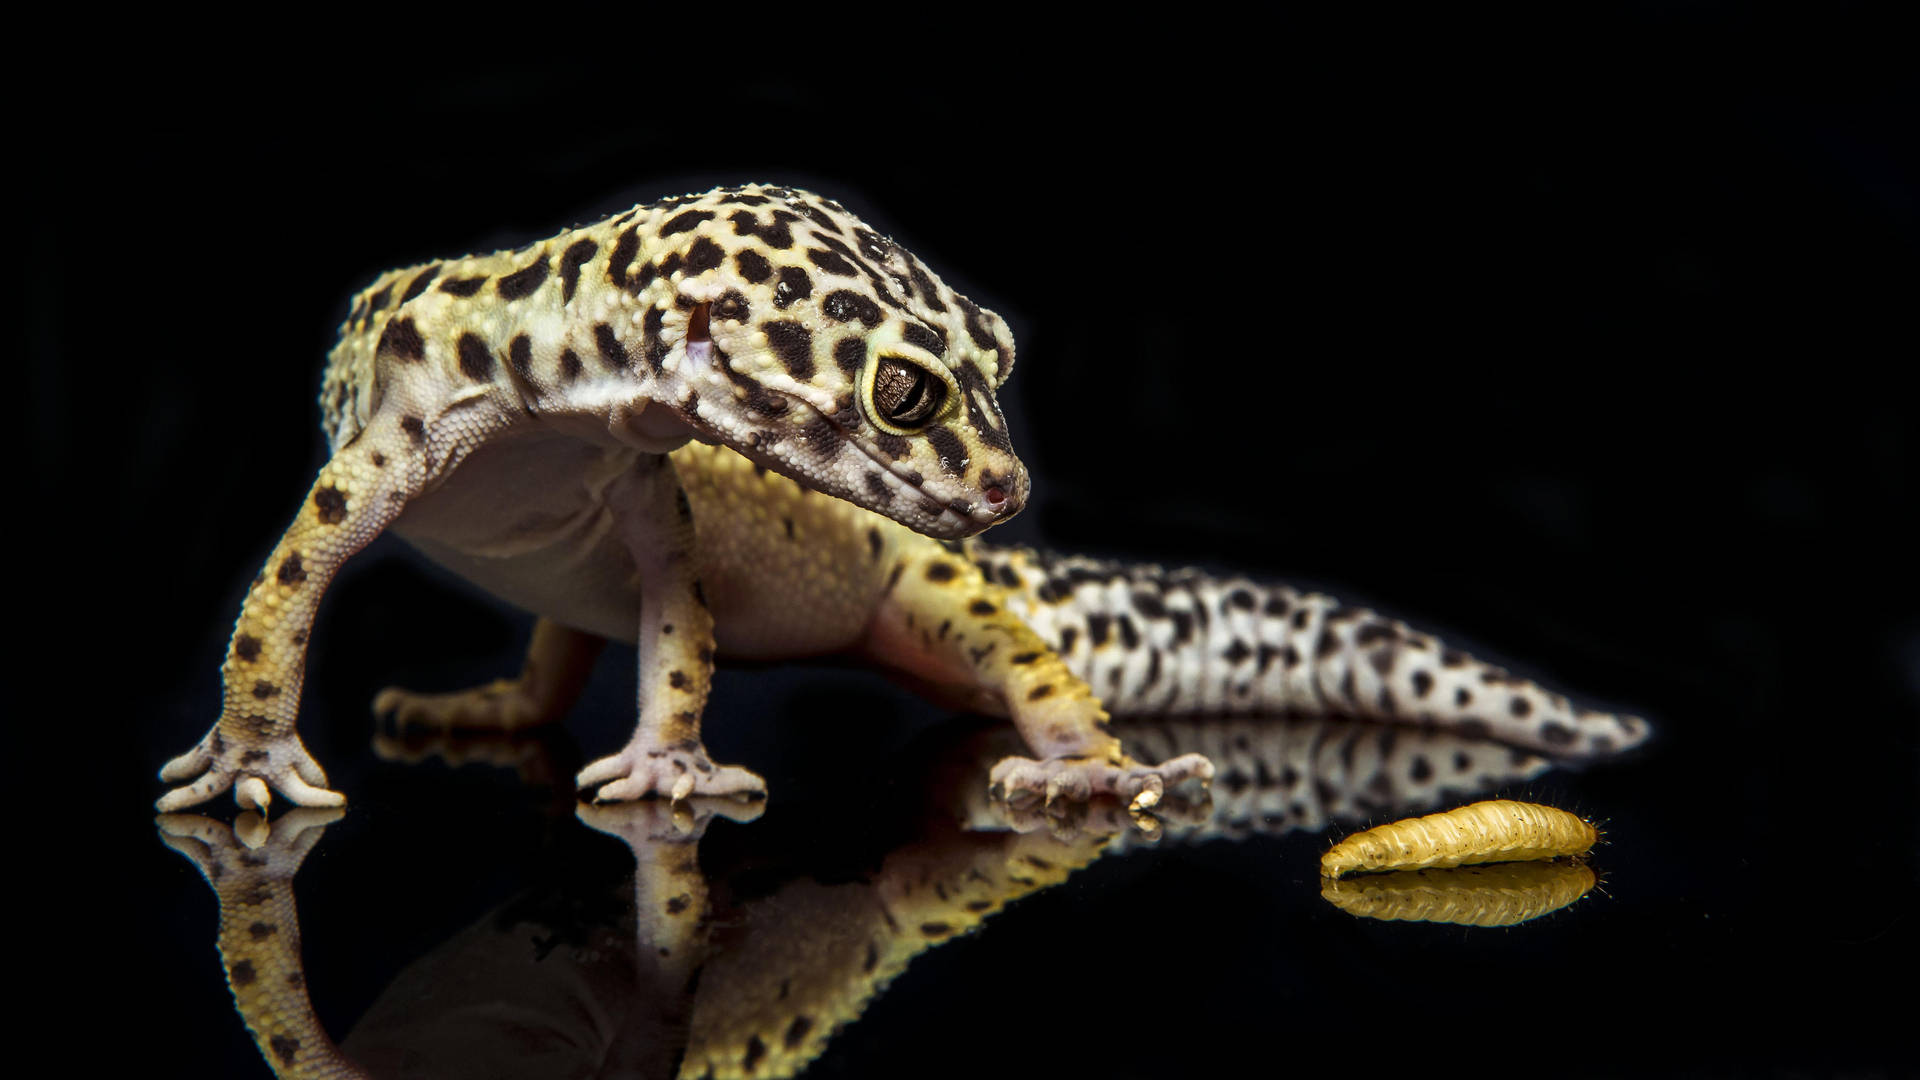 A Close Look at a Leopard Gecko Wallpaper